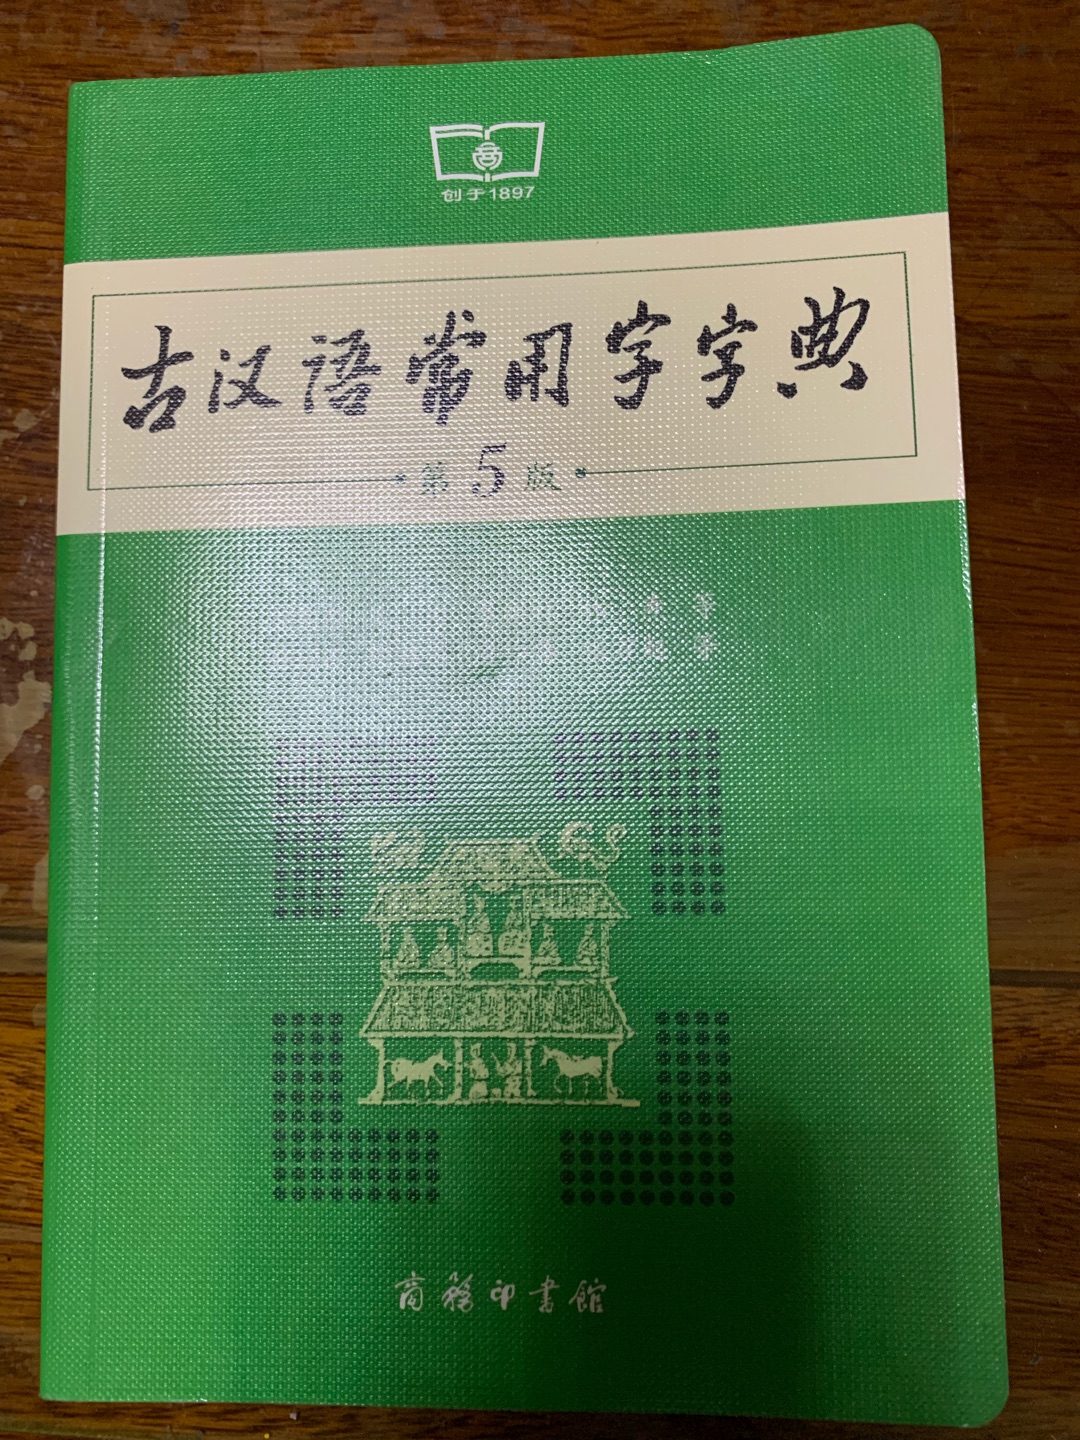 给我家的小学生买的古汉语常用字字典，帮助他学习古典文学。好评。